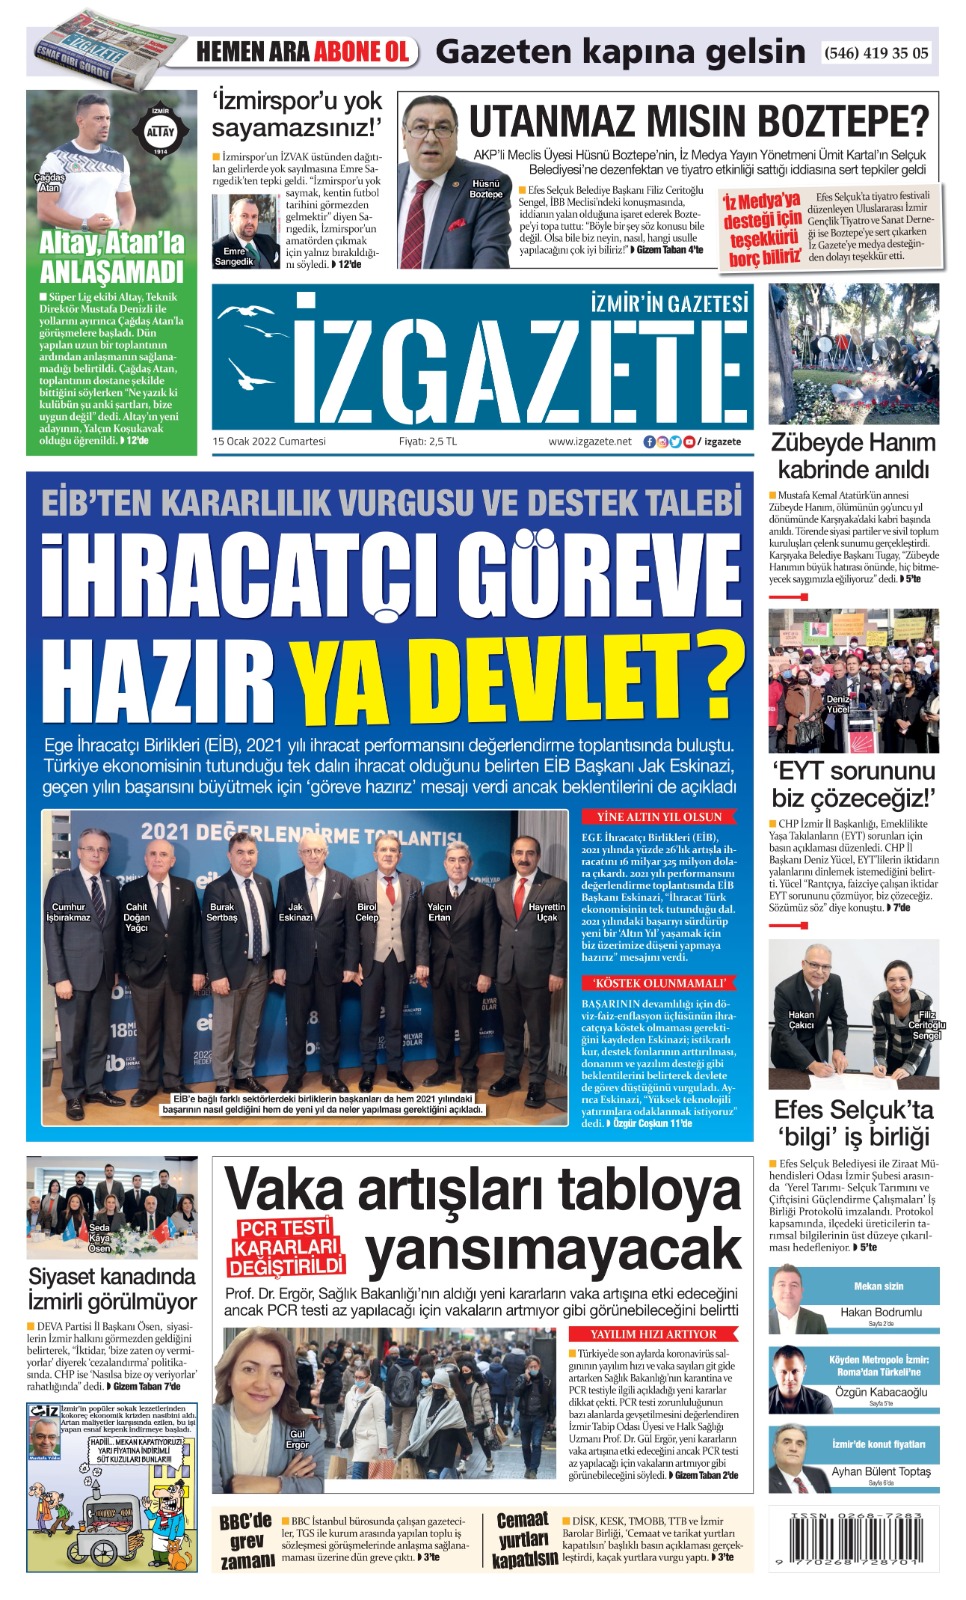 İz Gazete - İzmir'in Gazetesi - 15.01.2022 Manşeti